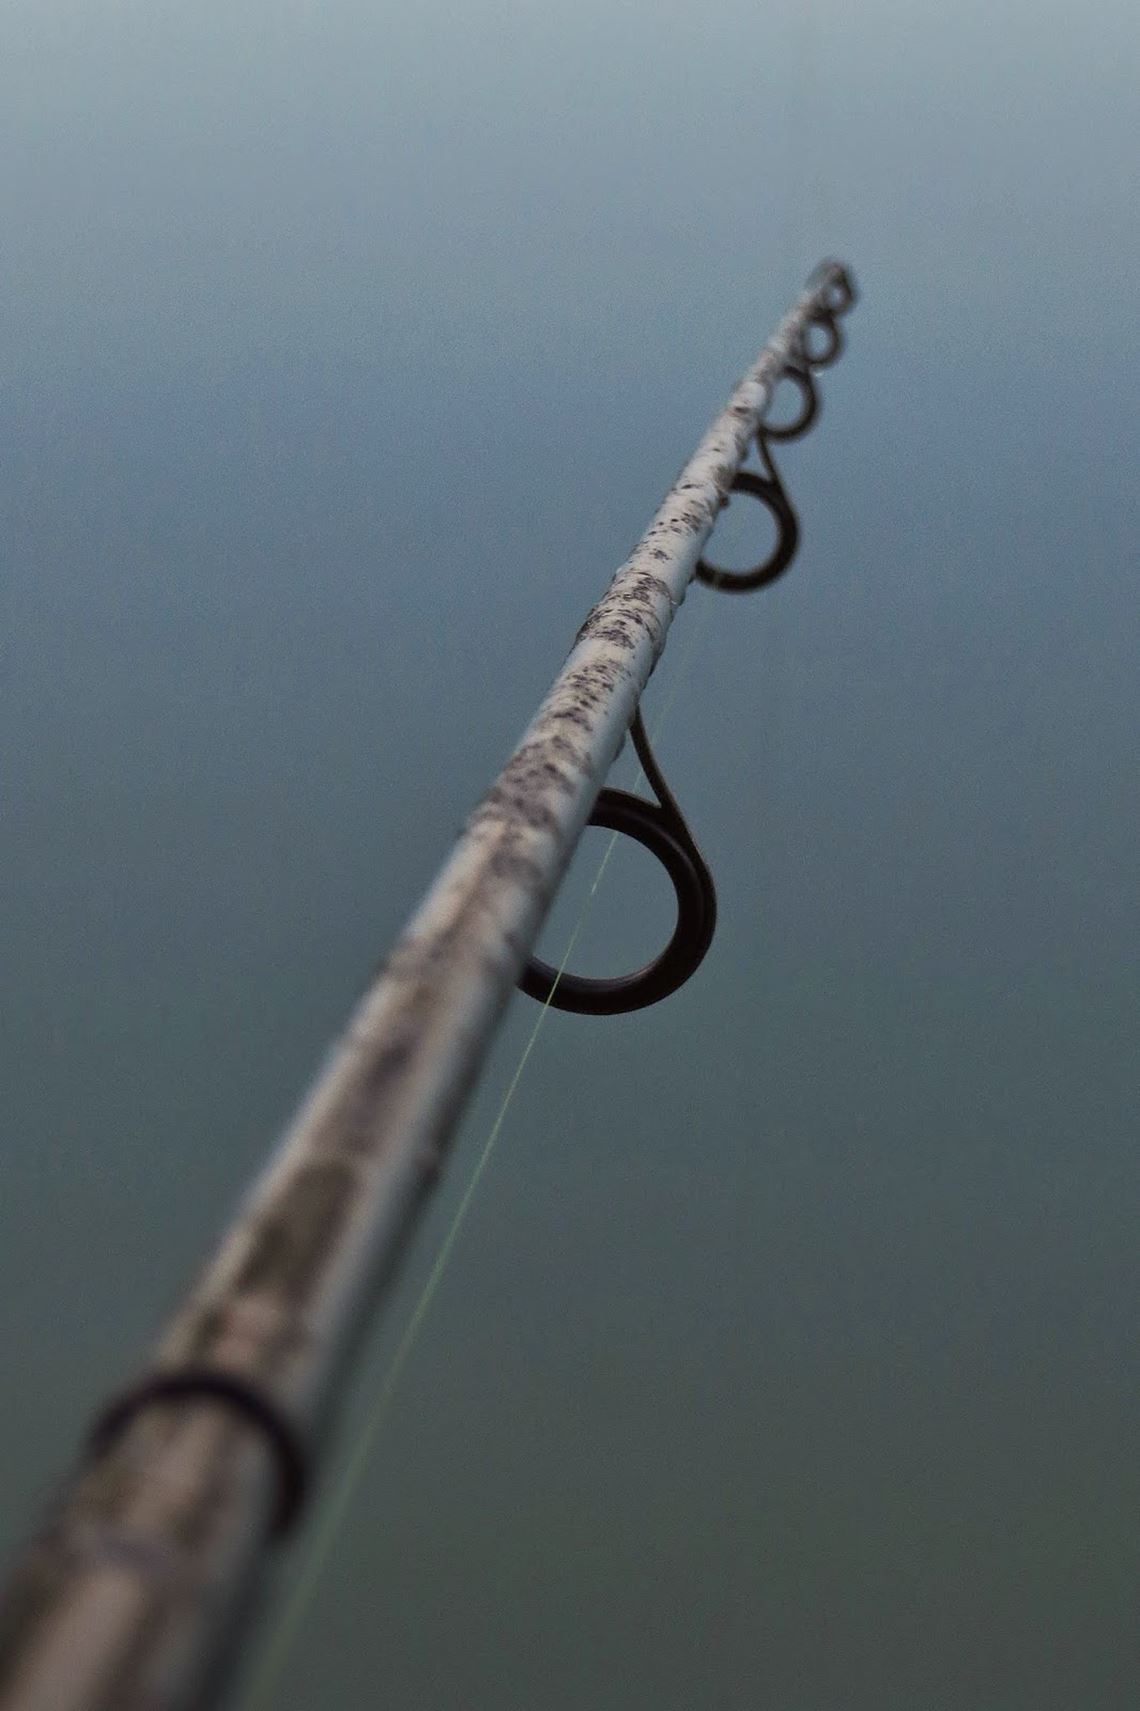 My fishing rod at Bagwood Lake